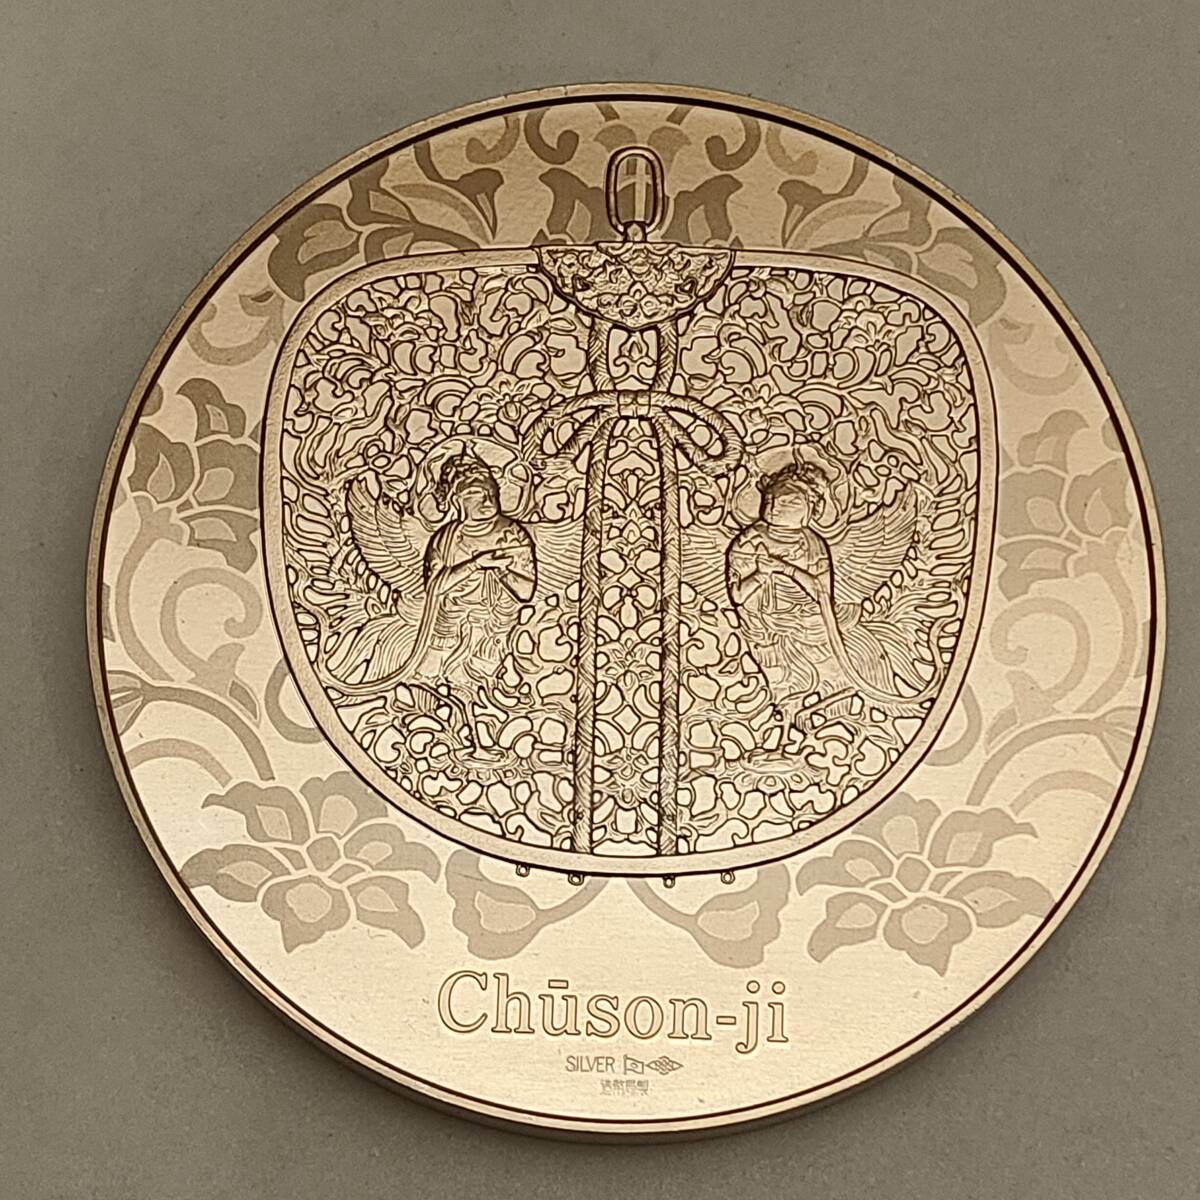 ●国宝章牌 中尊寺 銀メダル 造幣局製 SILVER 銀製 999刻印 純銀 約160g●の画像1